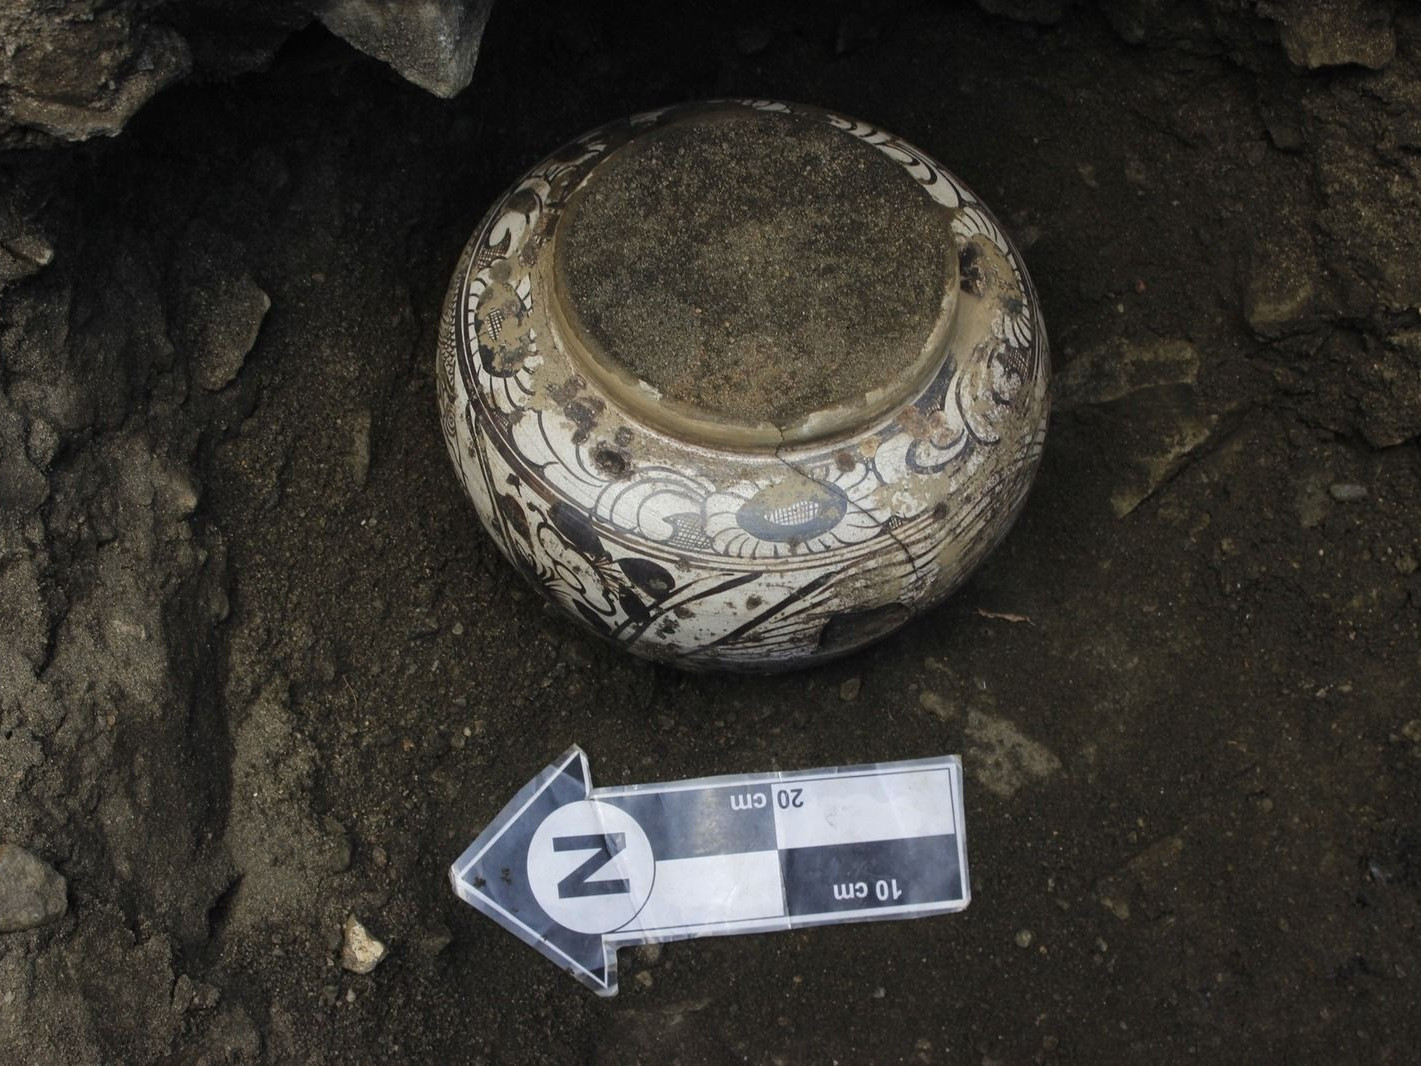 Хөвсгөлөөс 700-800 жил мөнх цэвдэгт хадгалагдсан гурван ваар дүүрэн шар тос олджээ